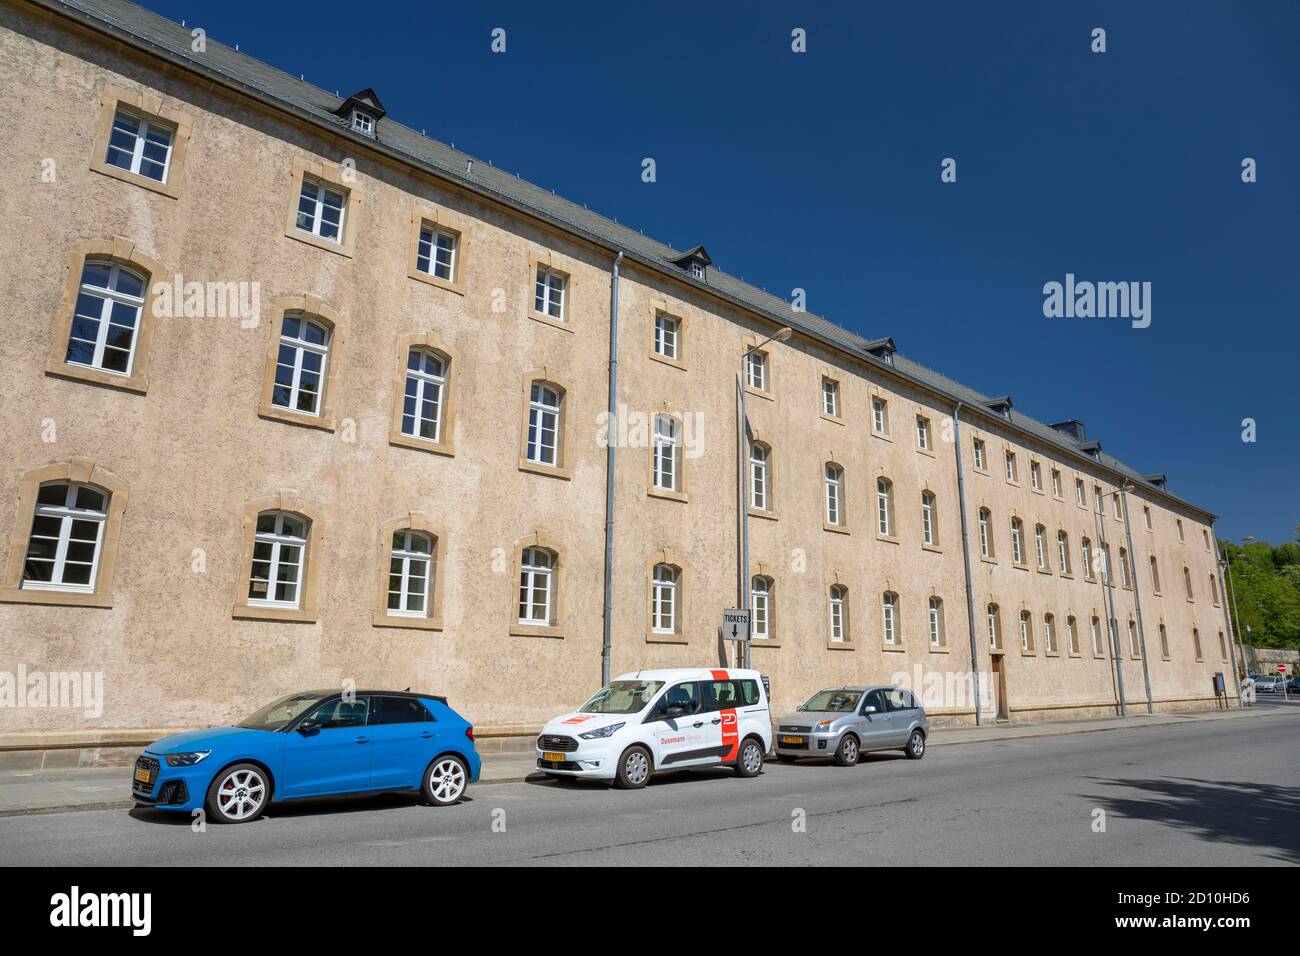 Europe, Luxembourg, Echternach, Lycee Classique d'Echternach (Secondary School Building) Stock Photo